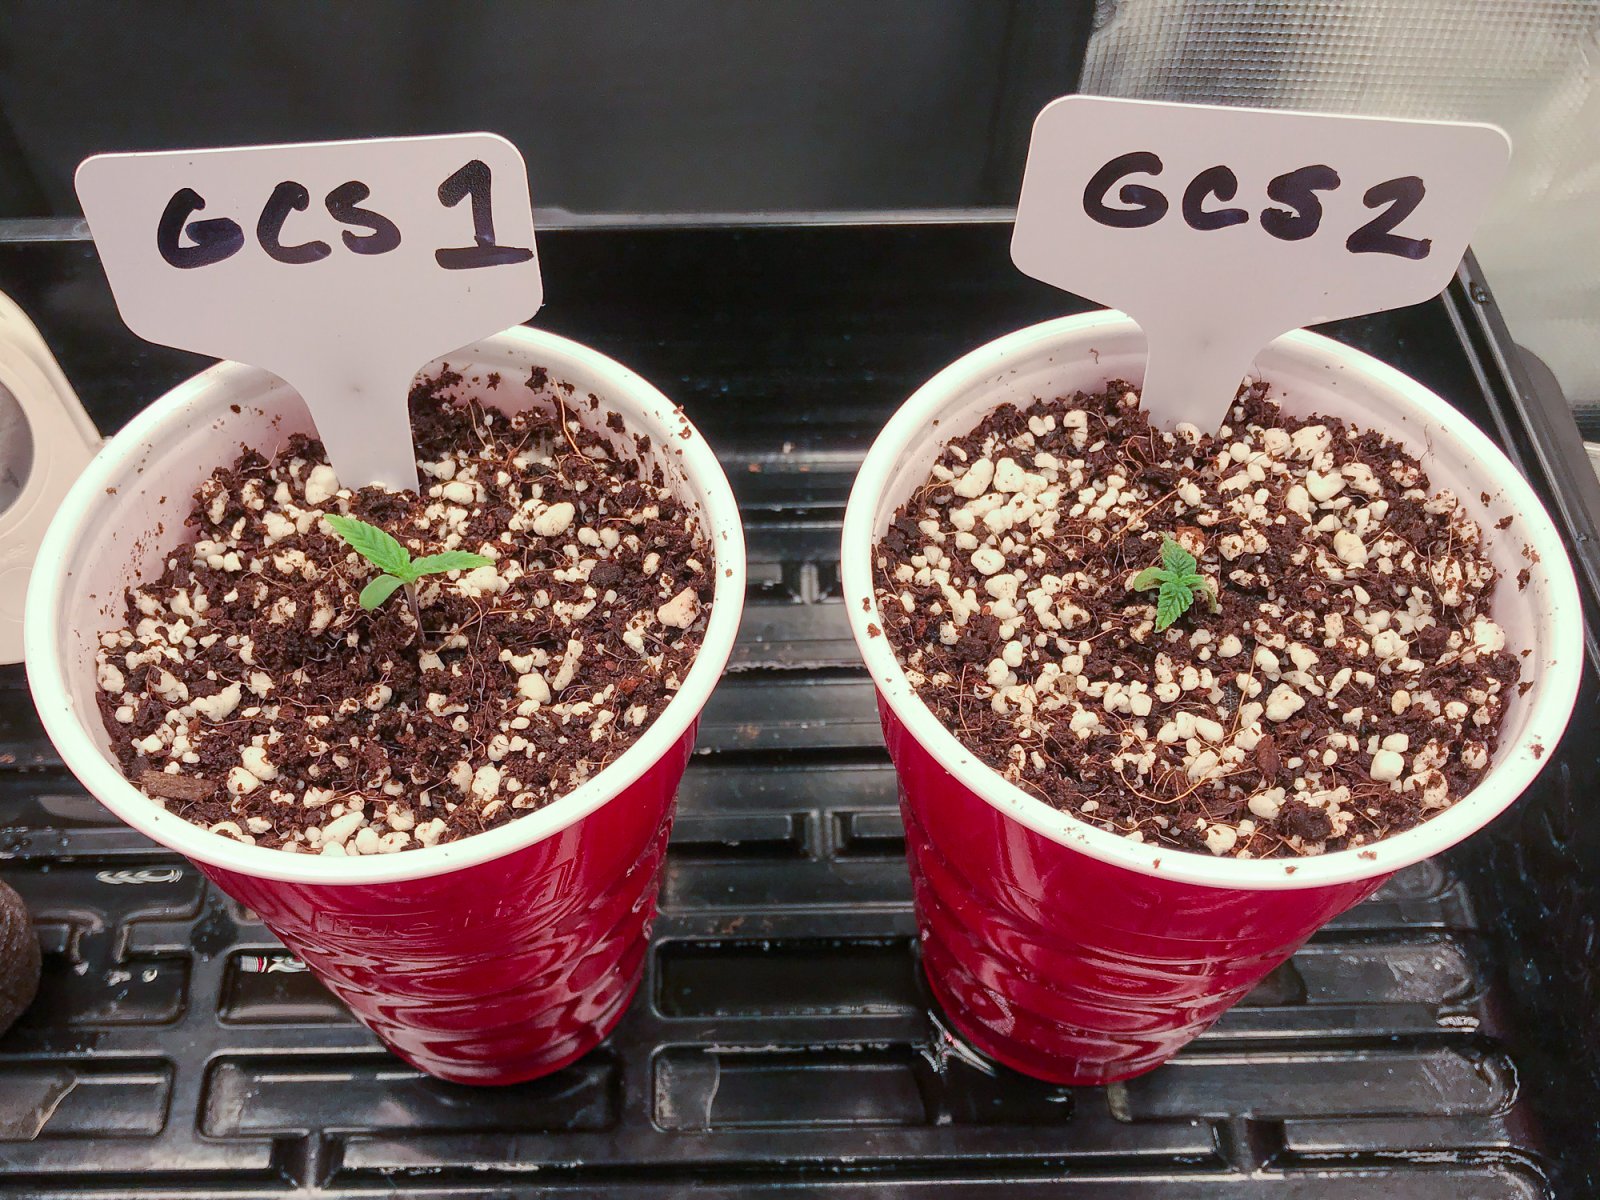 Seedlings 1 and 2 Day 1-1.jpg